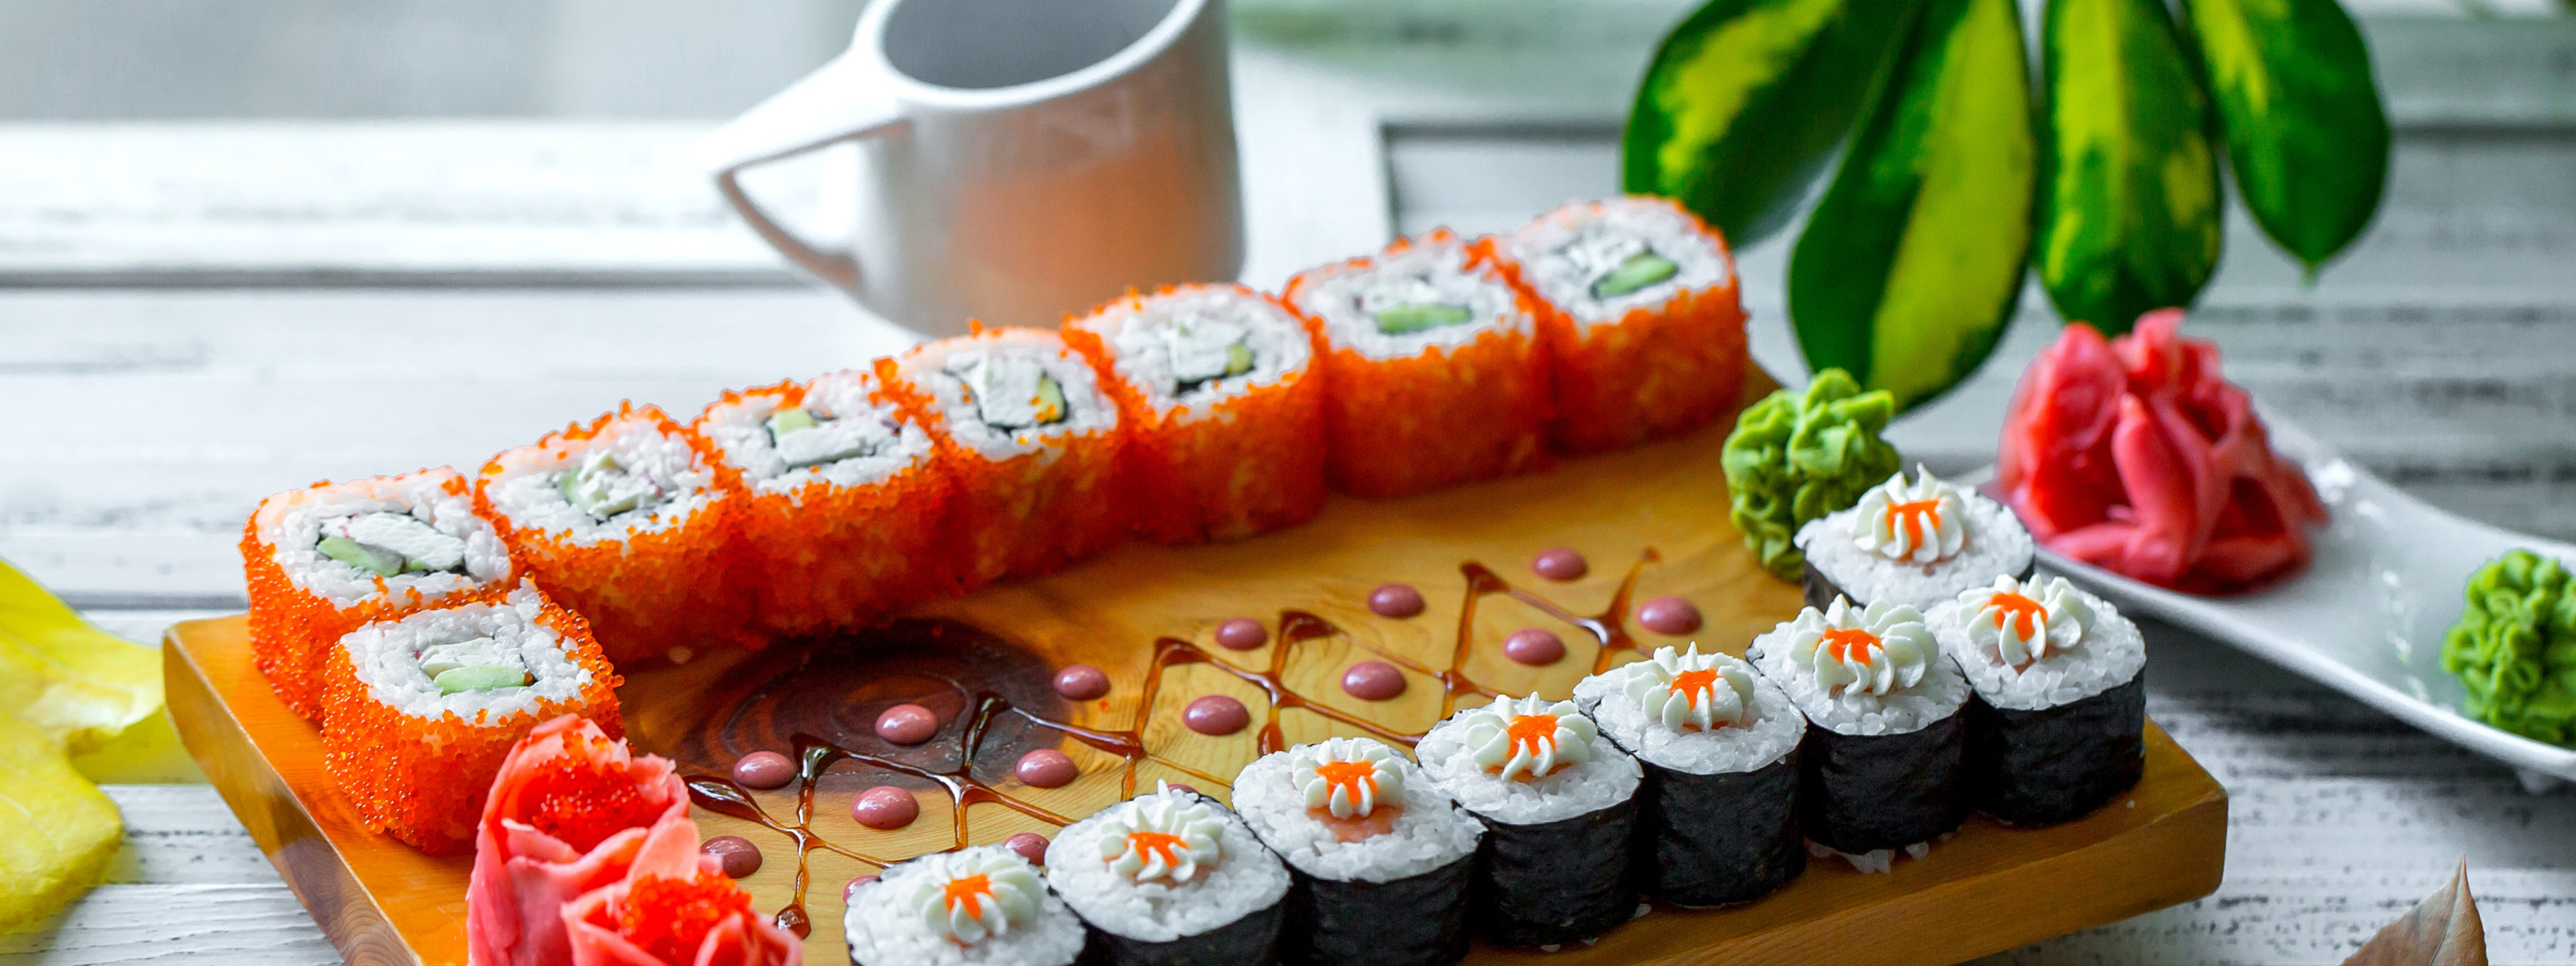 Заказать суши в краснодаре с бесплатной доставкой тануки фото 6